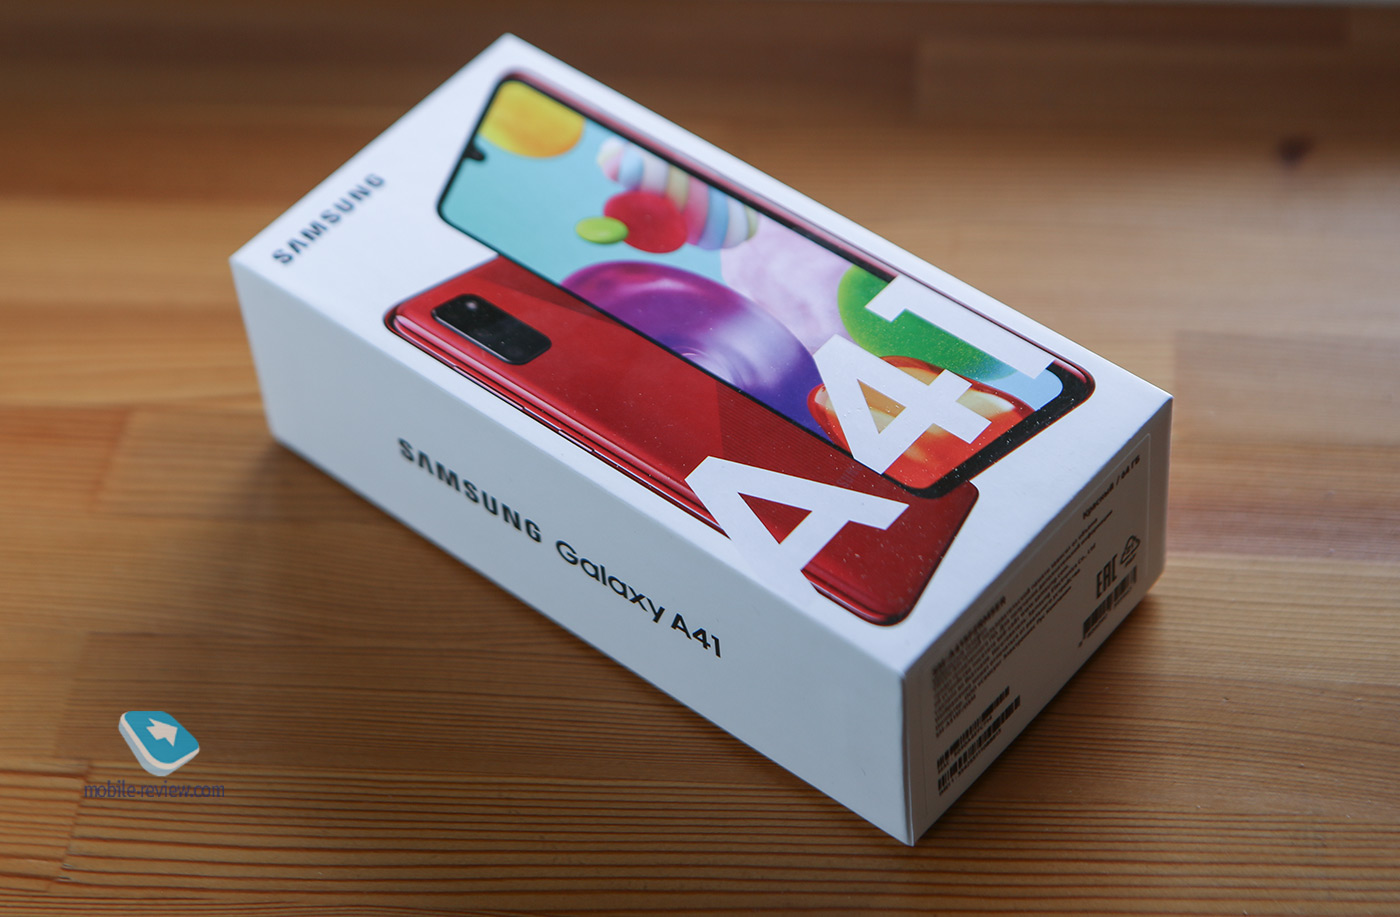 Обзор смартфона Samsung Galaxy A41 (SM-A415F/DSM)